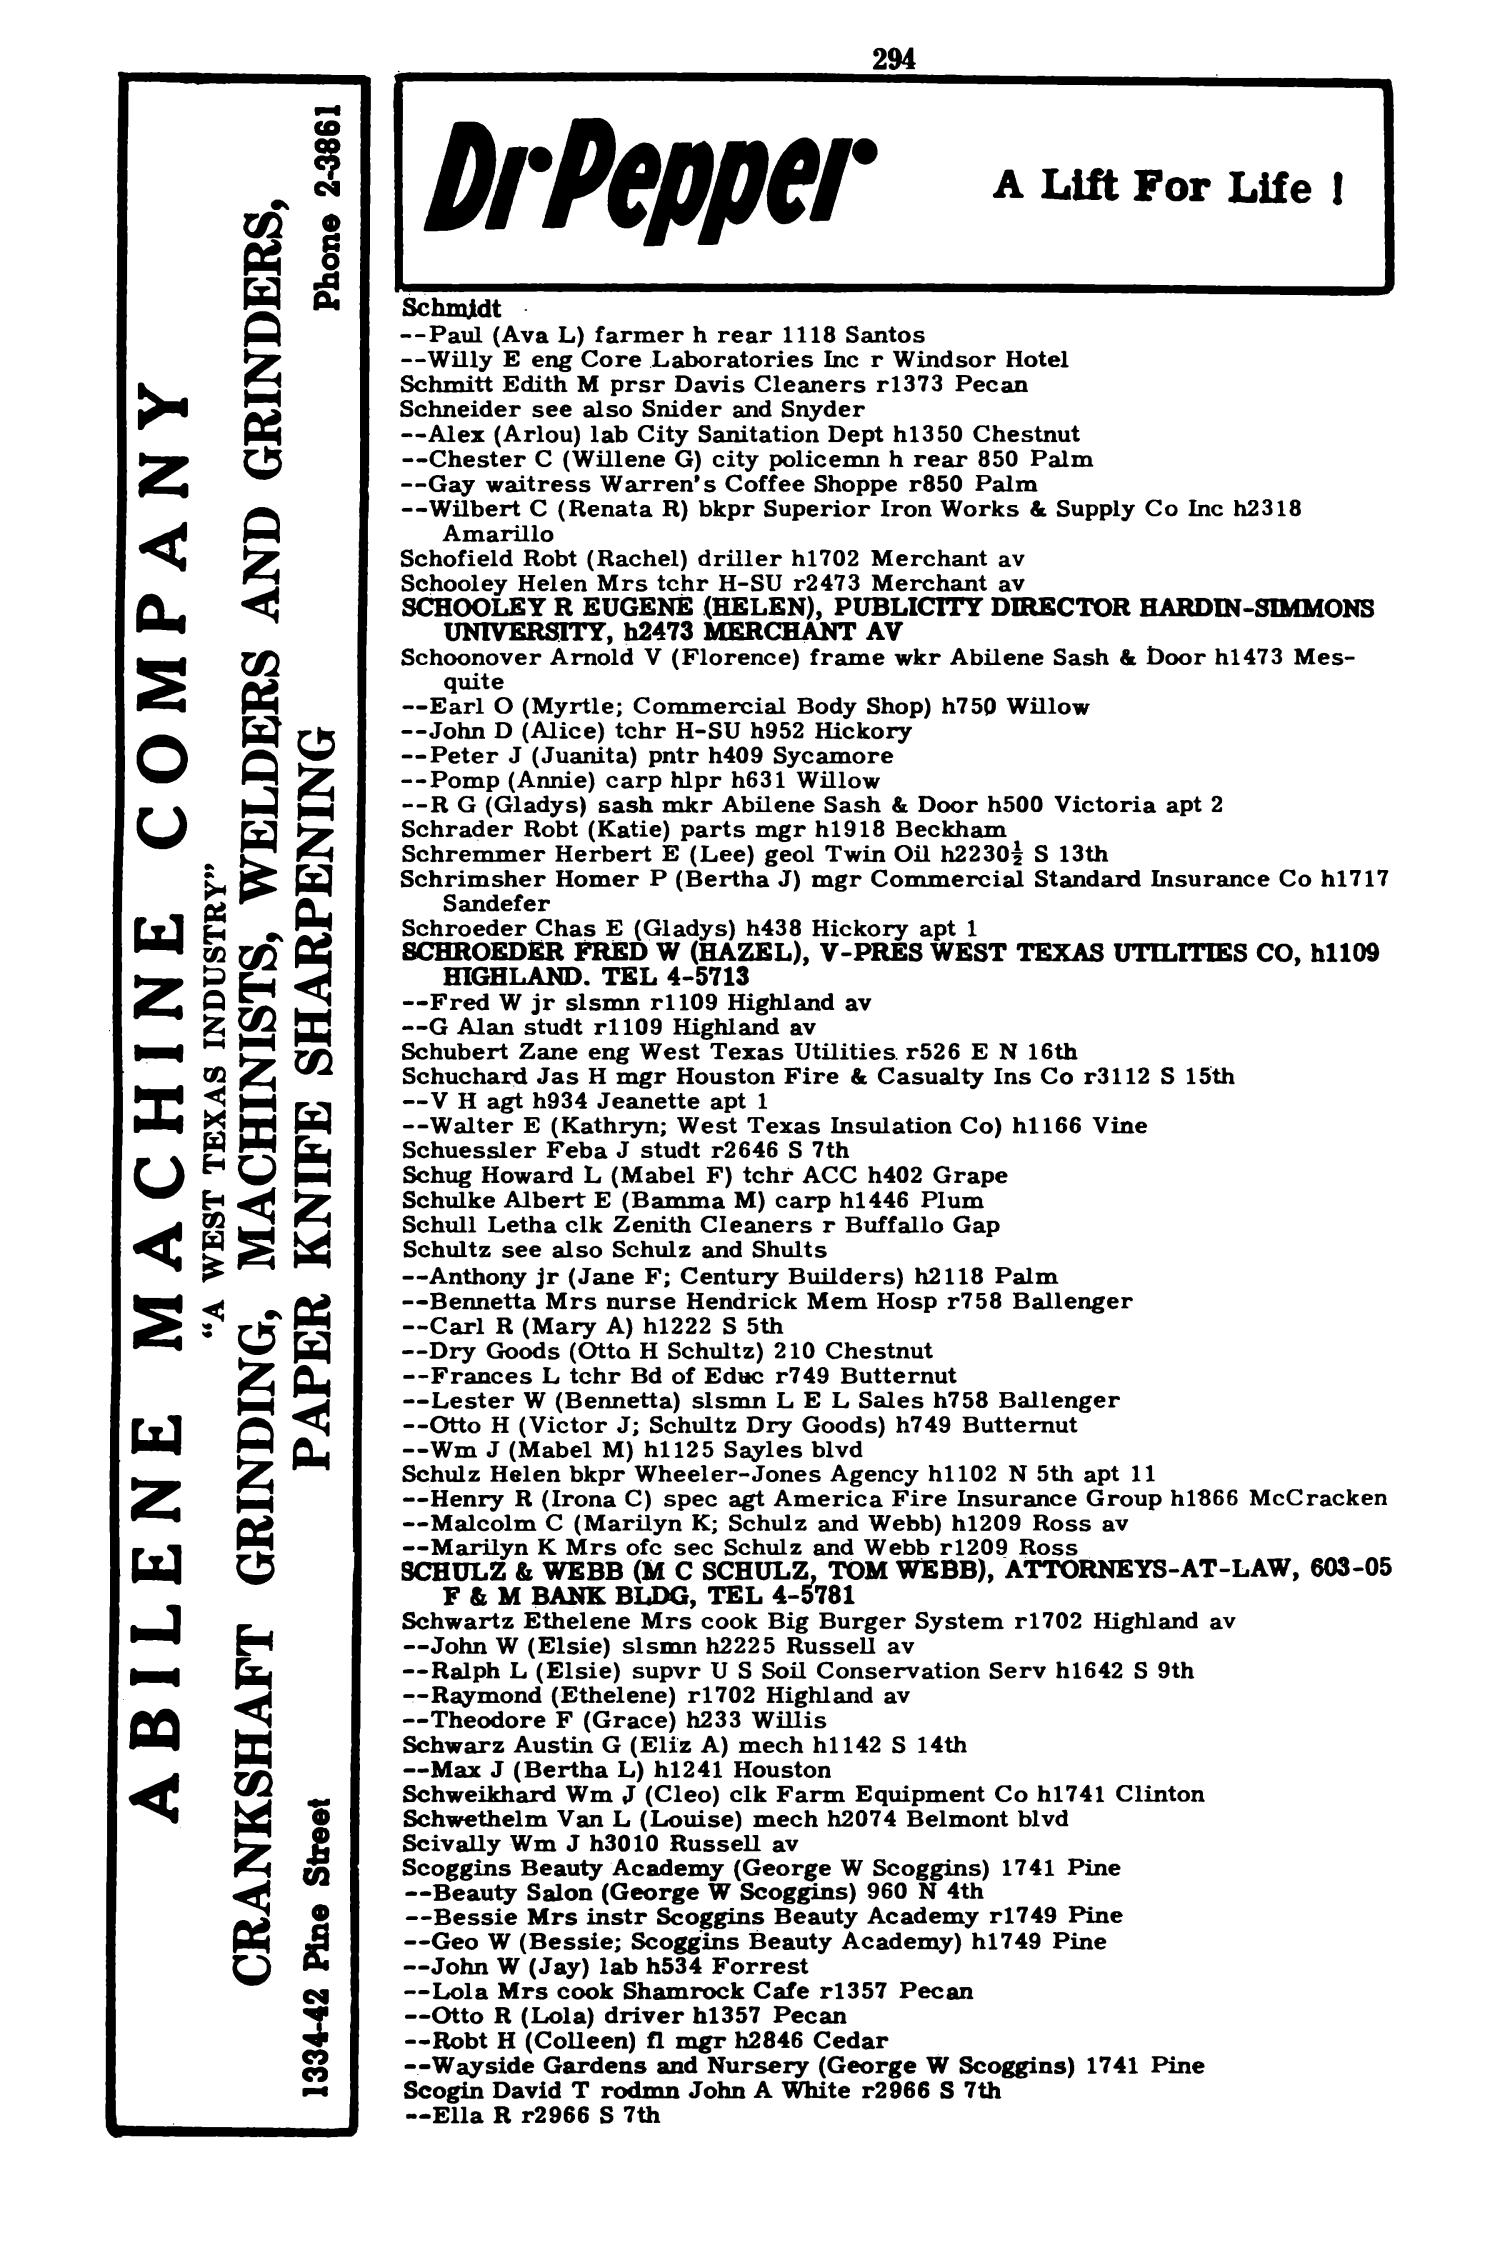 Worley's Abilene (Taylor County, Texas) City Directory, 1951
                                                
                                                    294
                                                